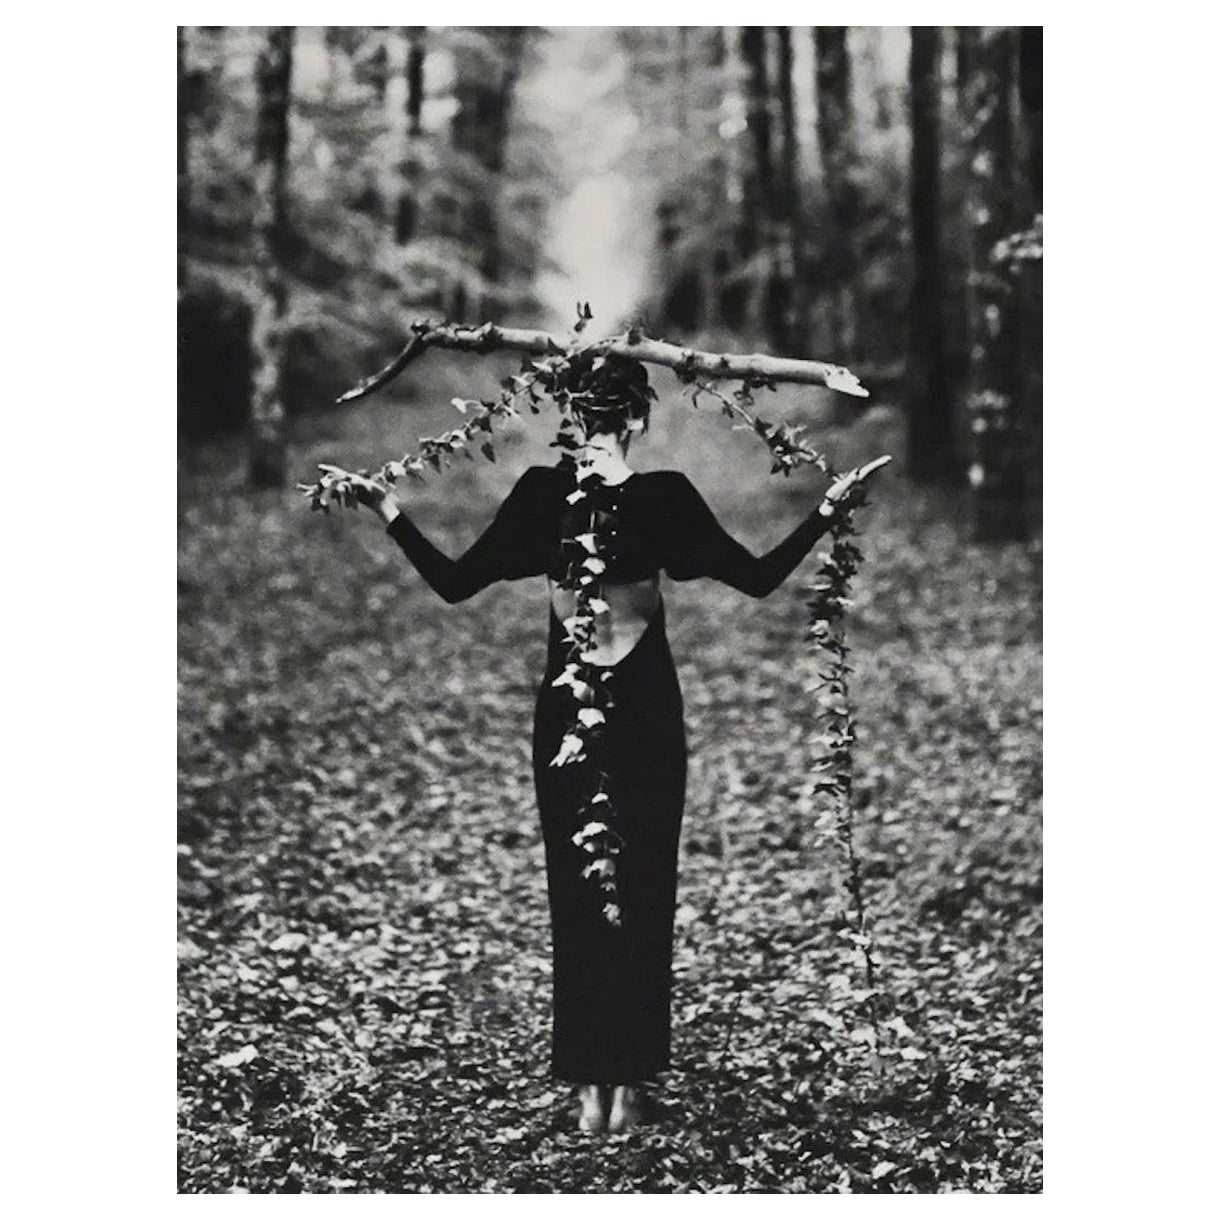 Photographie originale d'un modèle dans les bois par Bruce Weber pour Karl Lagerfeld 4